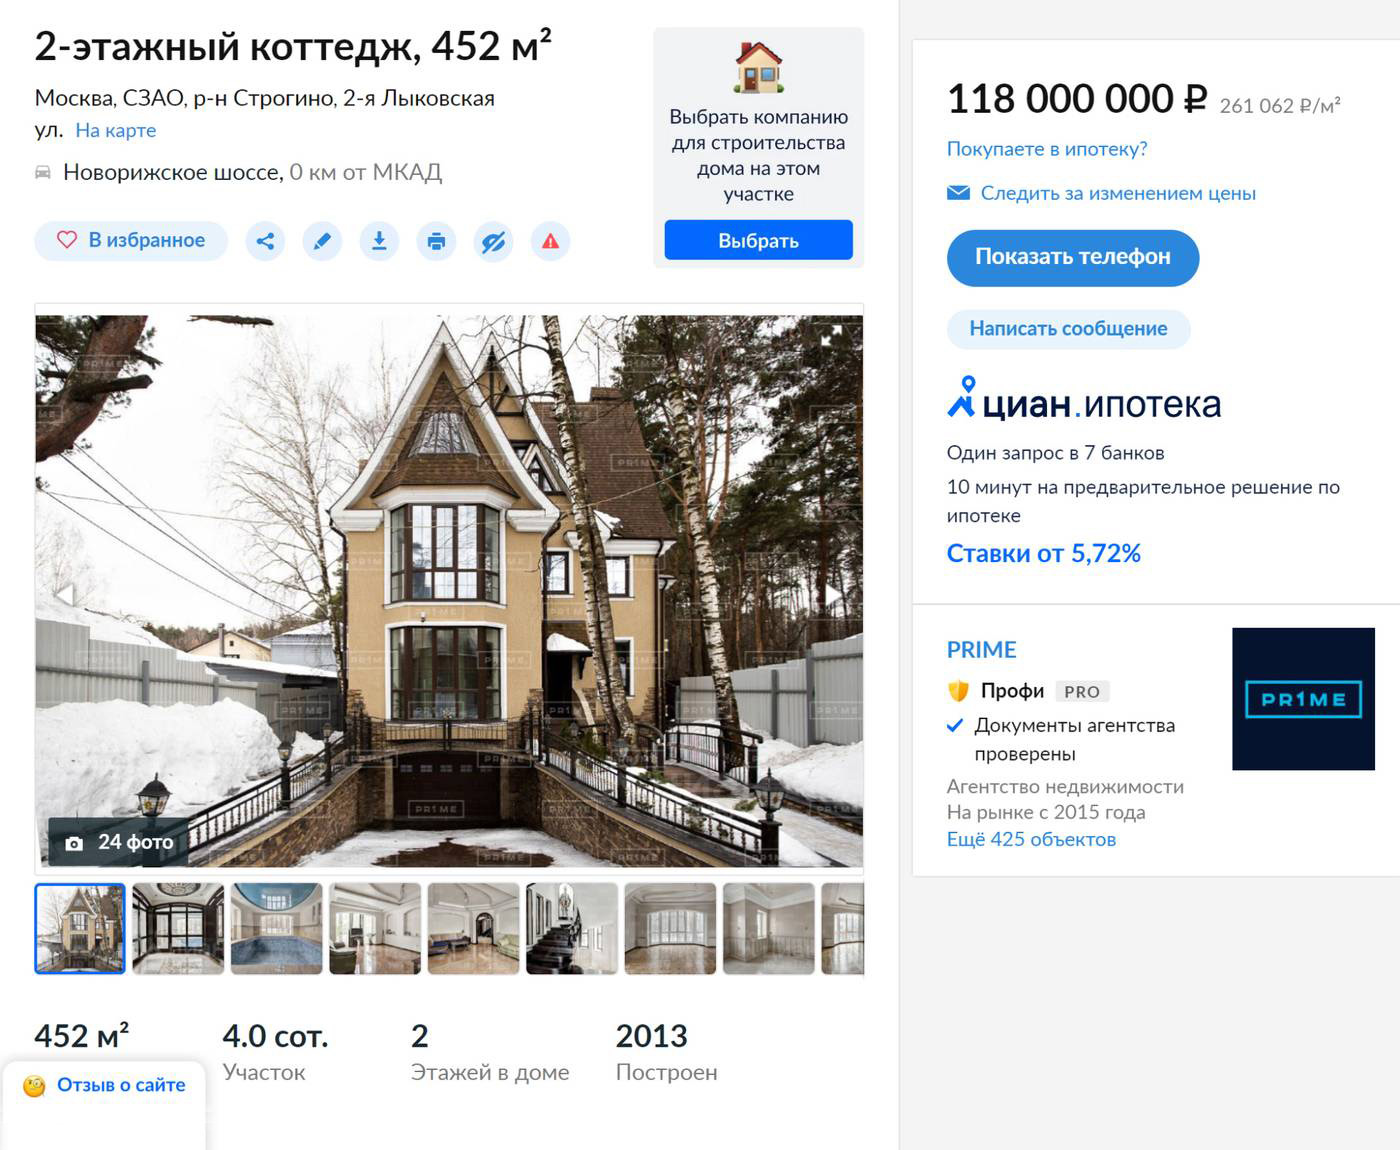 Желающие купить коттедж в Москве должны выложить 118 млн рублей. Этот дом построен в 2013 году, его площадь — 452 м². Источник: cian.ru